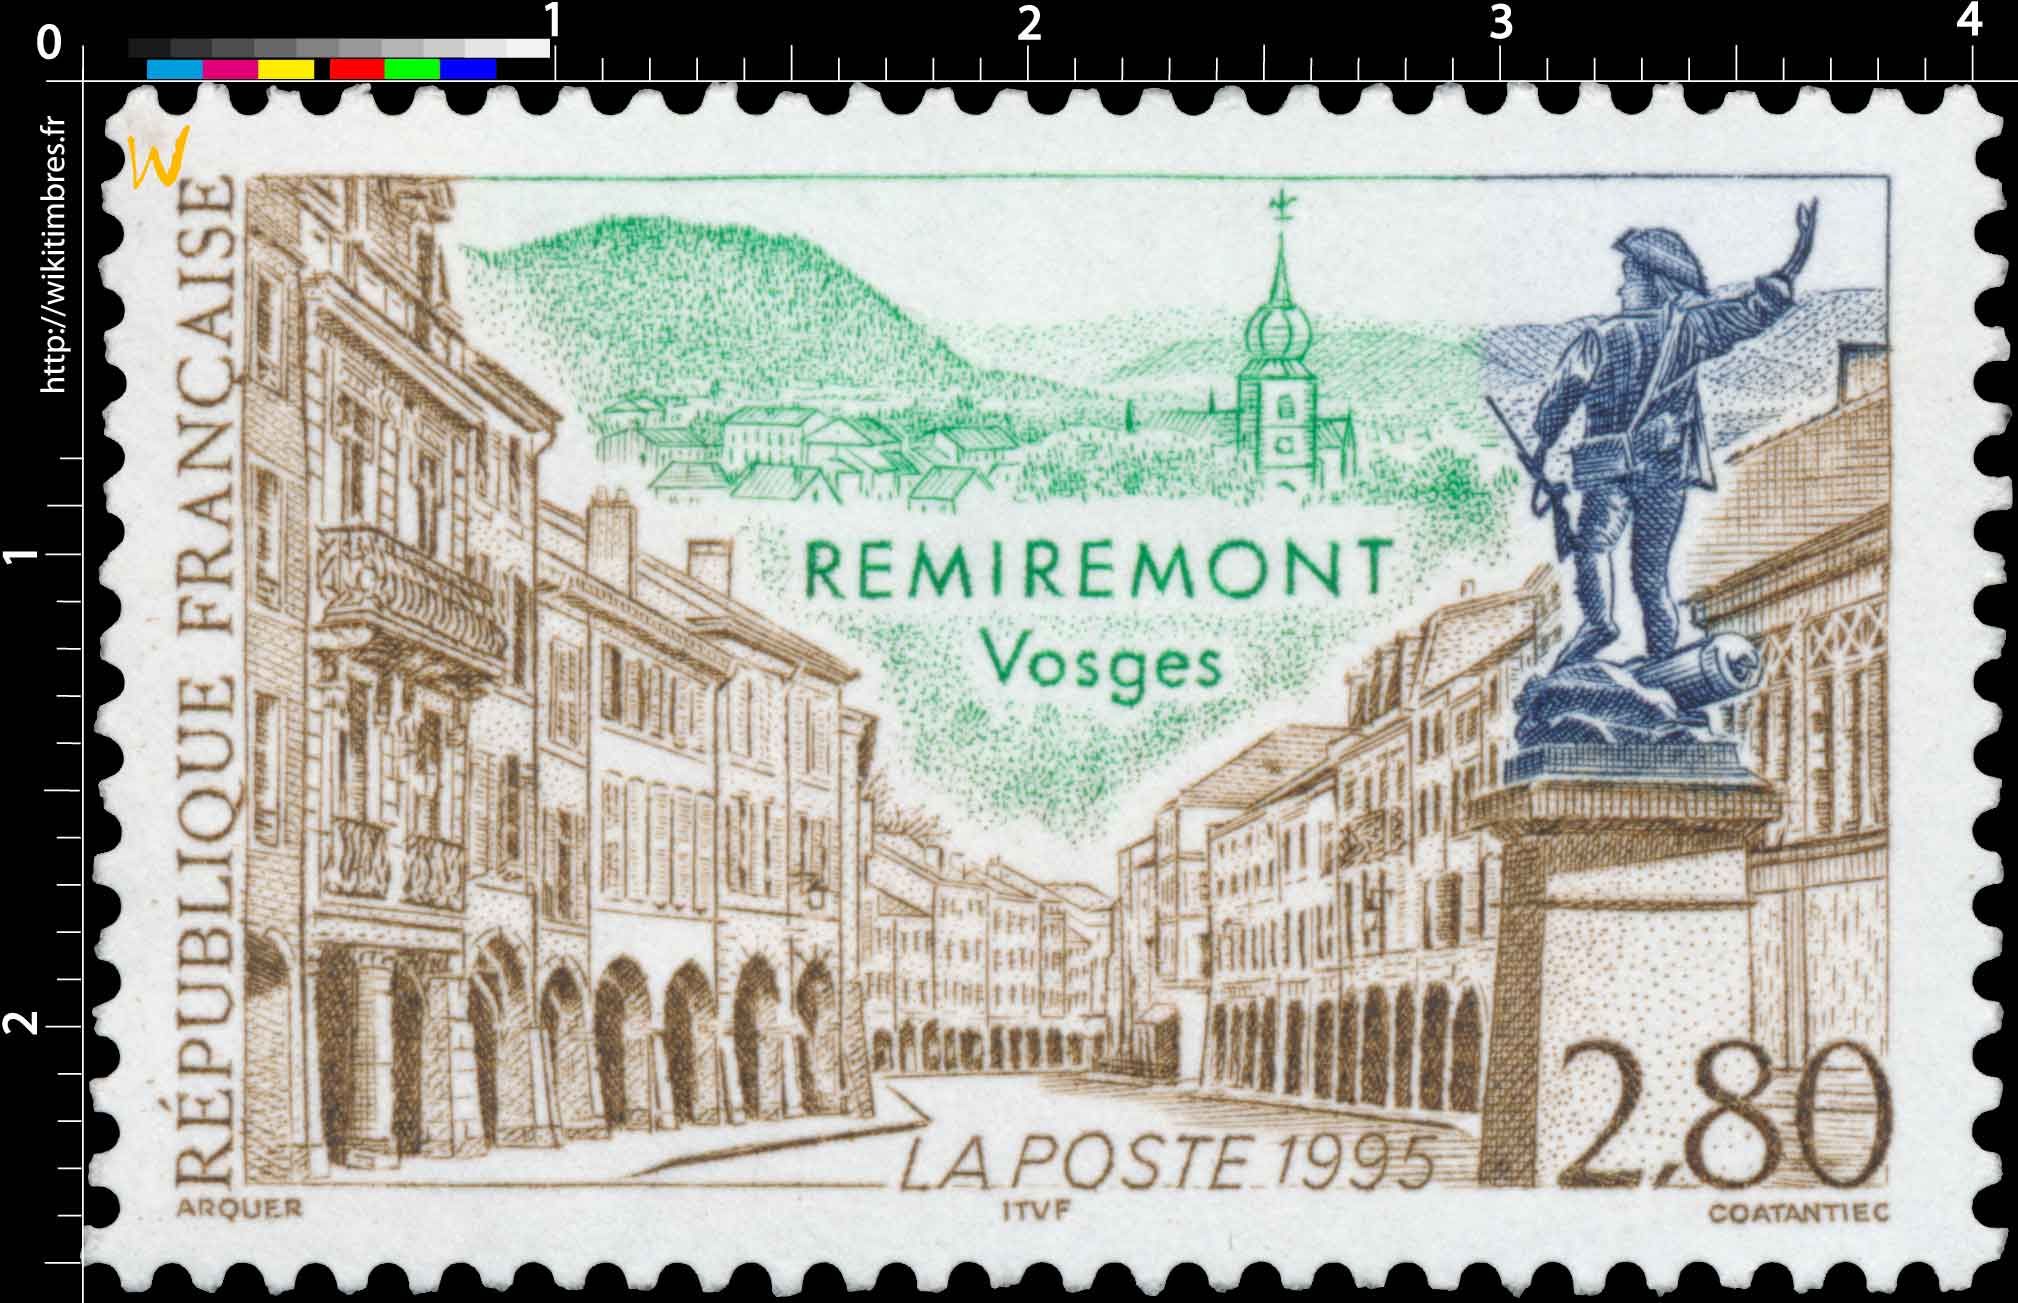 1995 REMIREMONT Vosges